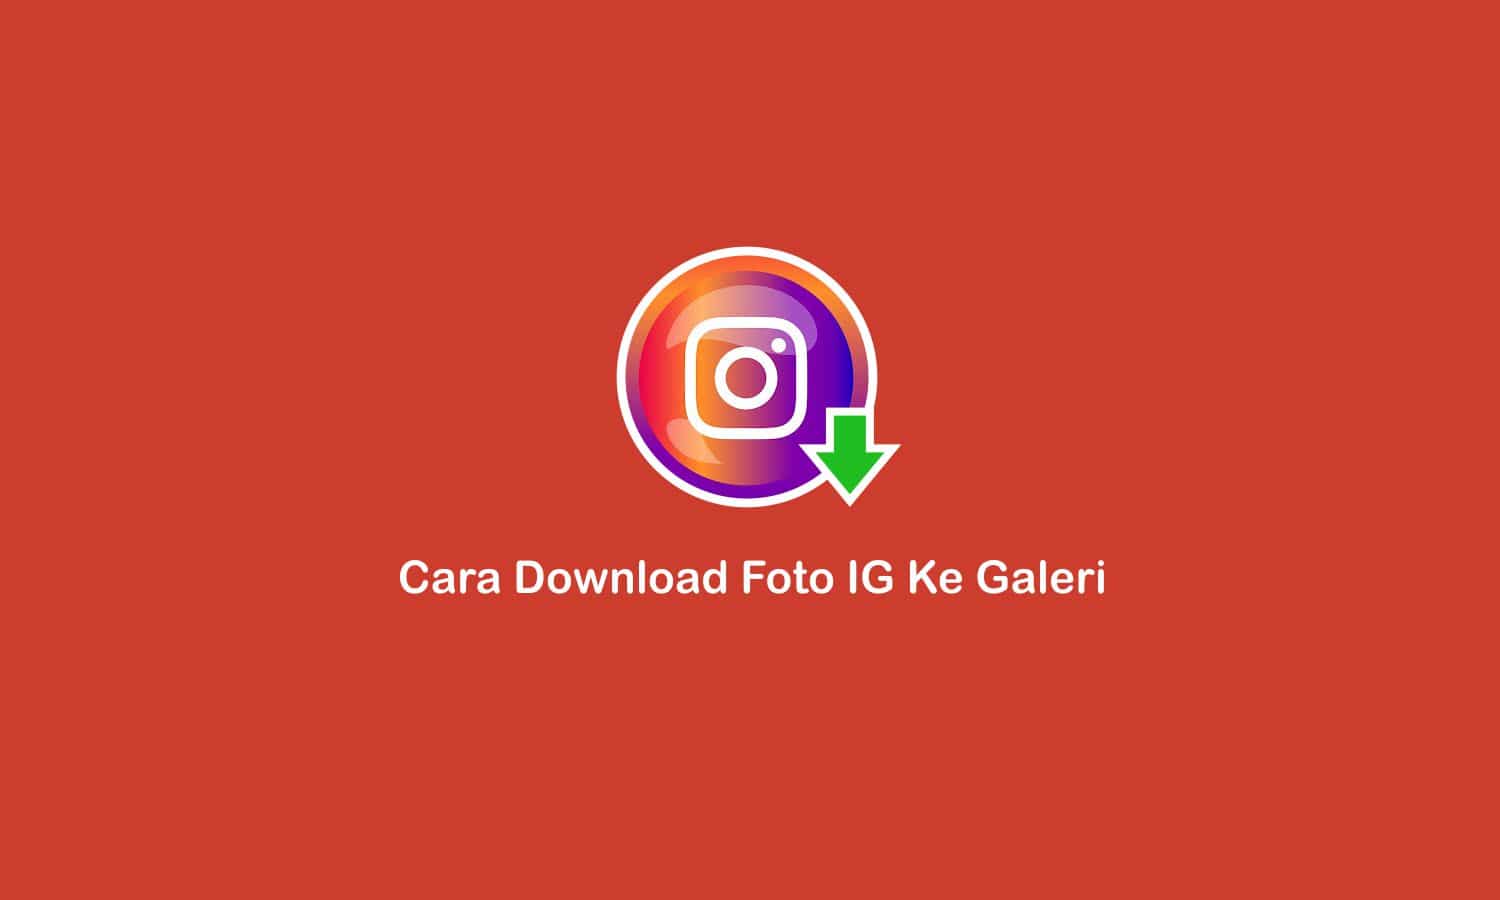 cara download foto Ig ke galeri